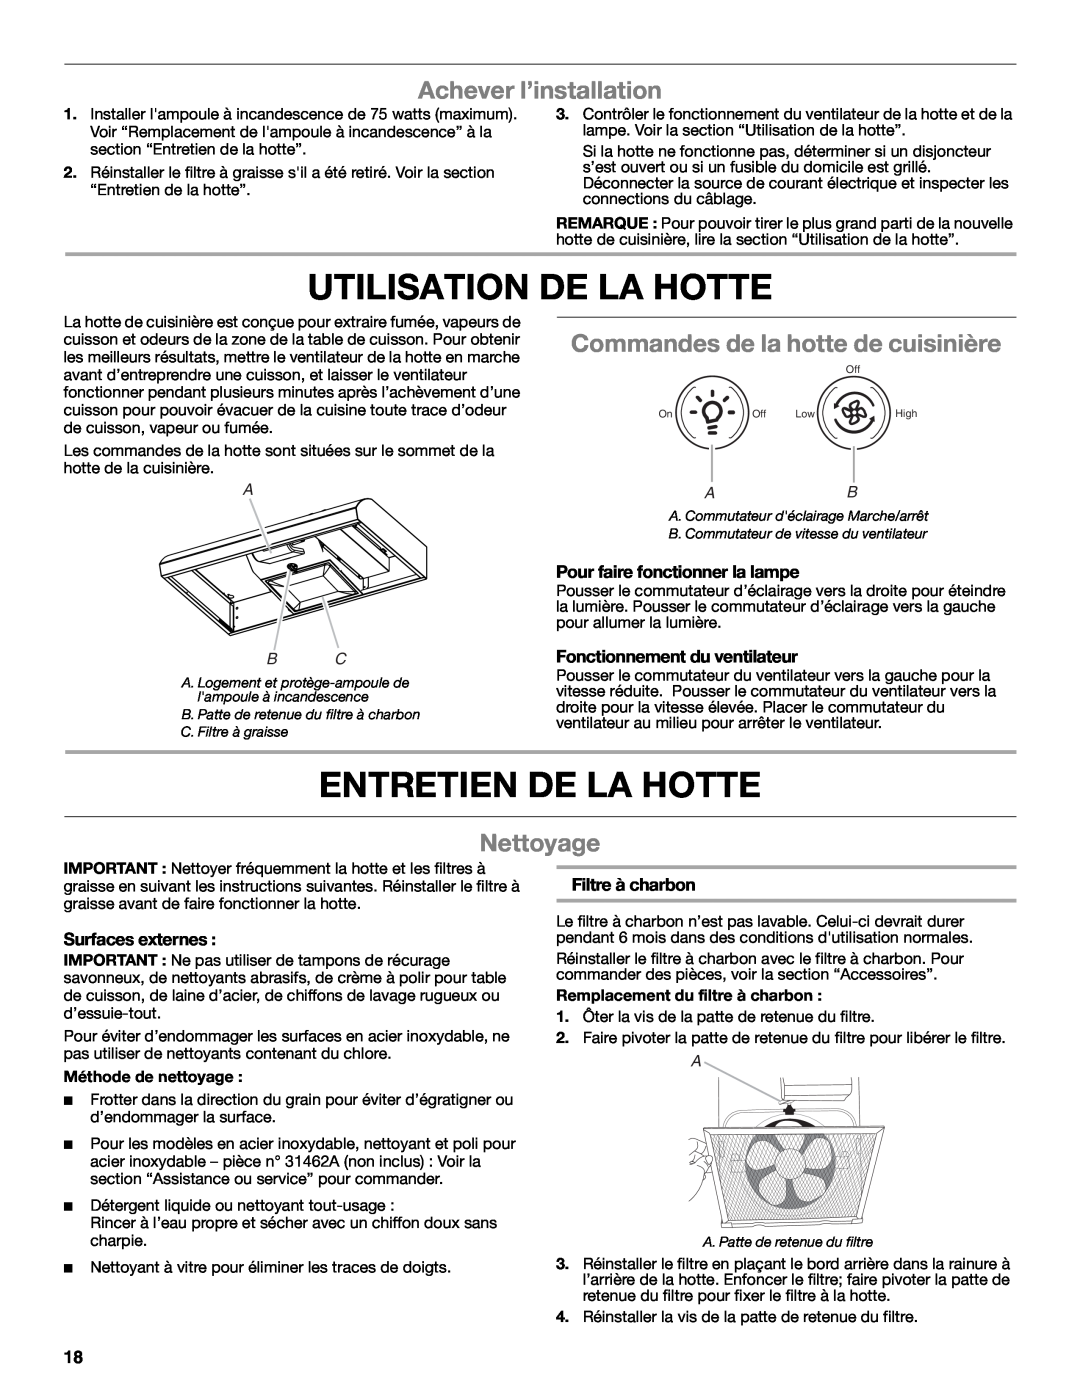 Whirlpool UXT4030AY Utilisation De La Hotte, Entretien De La Hotte, Achever l’installation, Nettoyage, Surfaces externes 